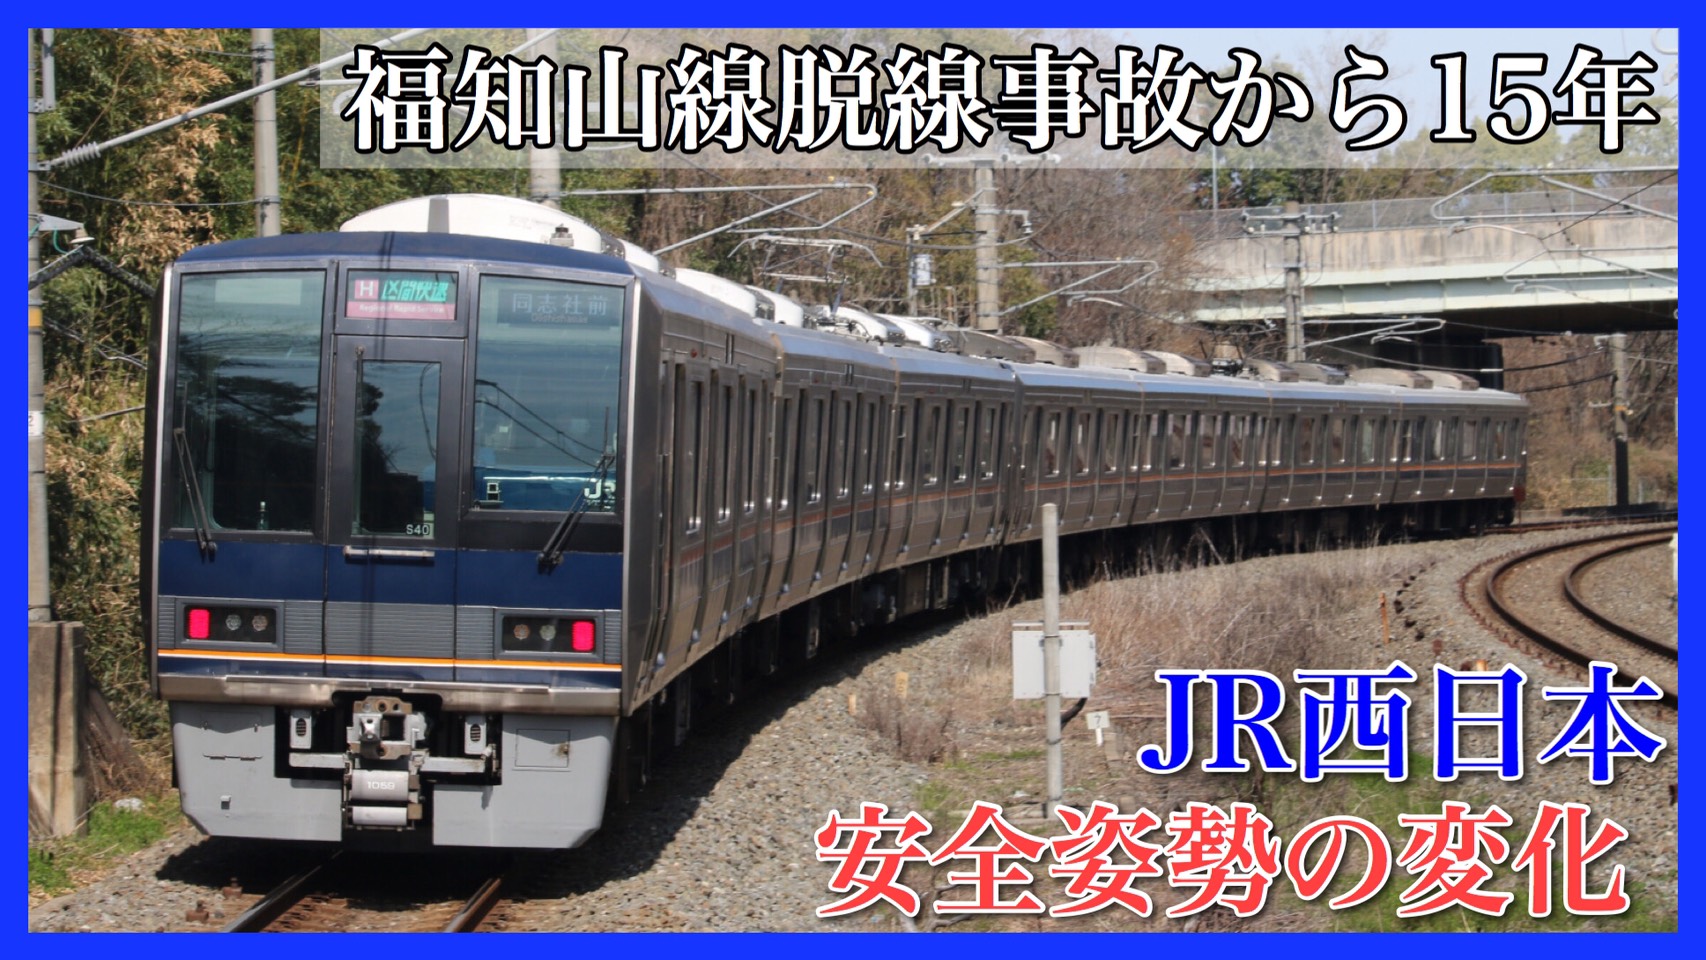 福知山線脱線事故 発生から15年 Jr西日本の安全対策の変化を振り返る 鉄道ファンの待合室